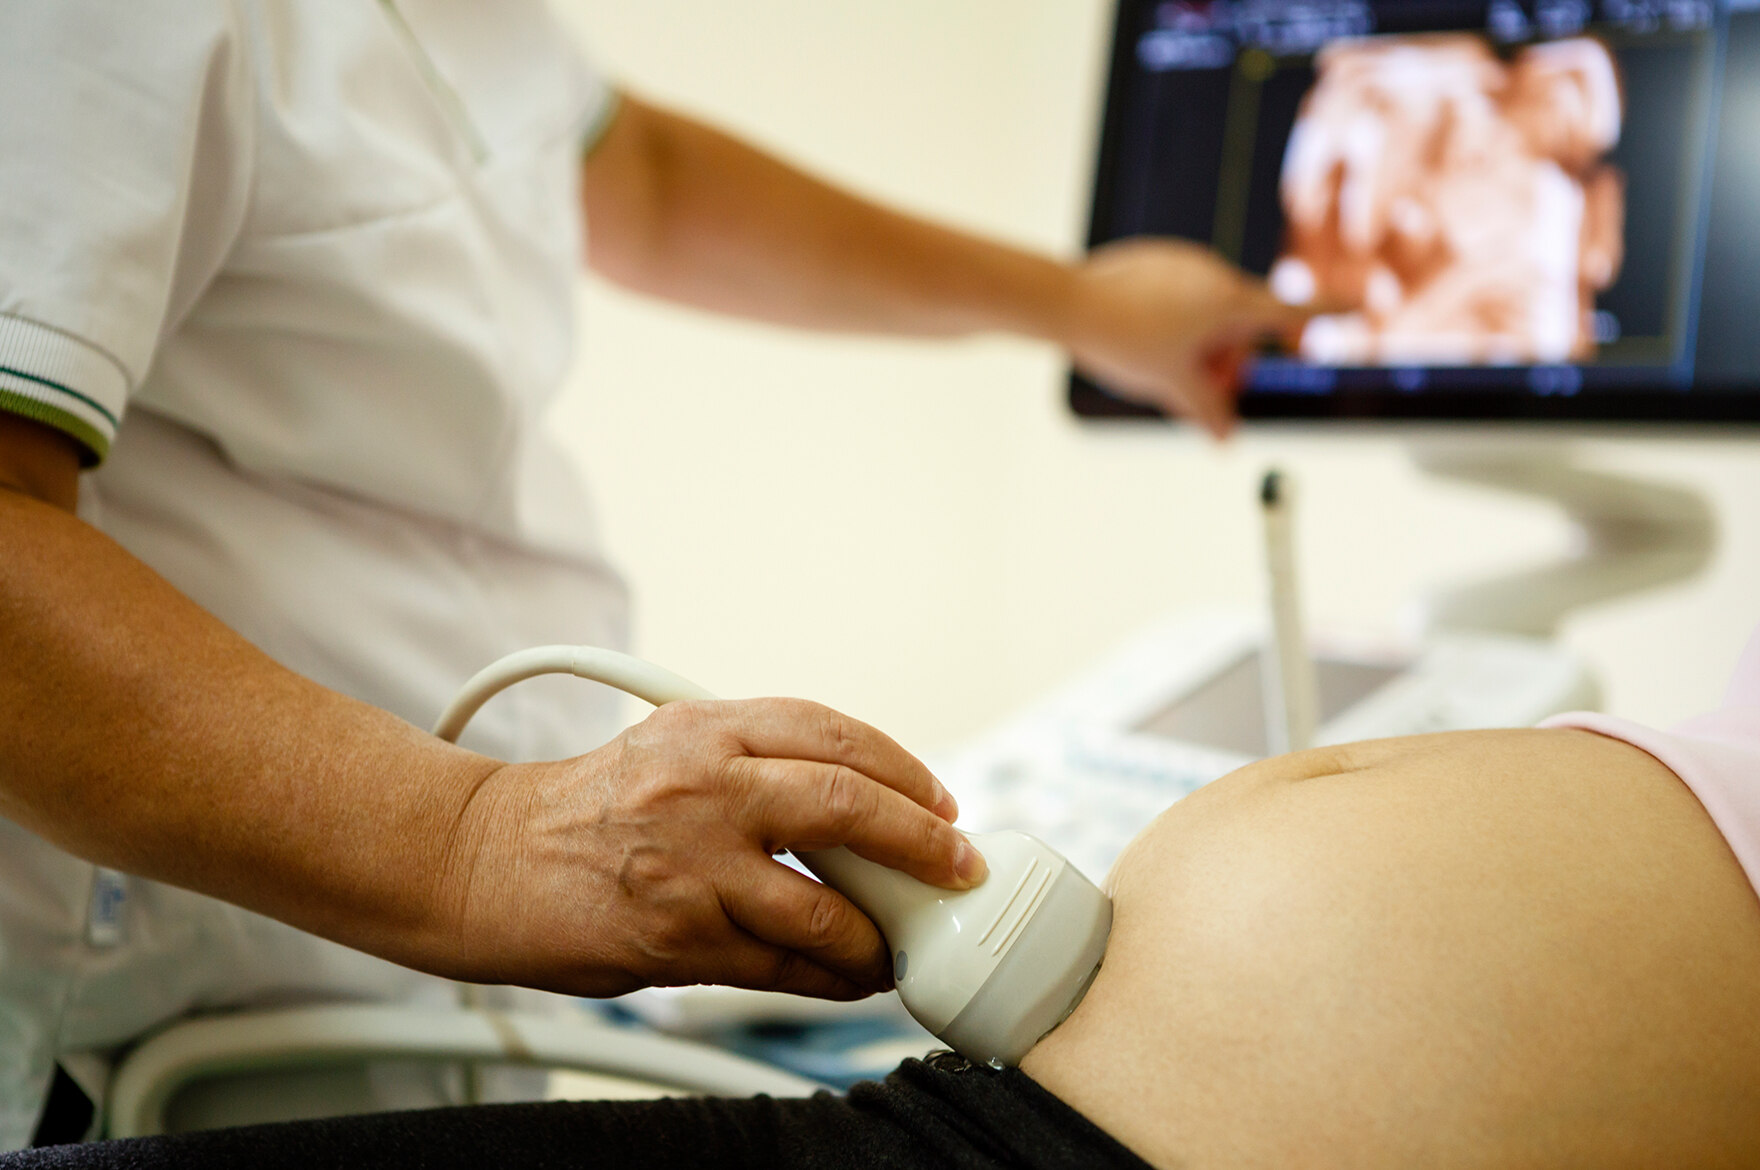 Ein Arzt macht einen Ultraschall bei einer Schwangeren und zeigt dabei mit der linken Hand auf den Monitor.